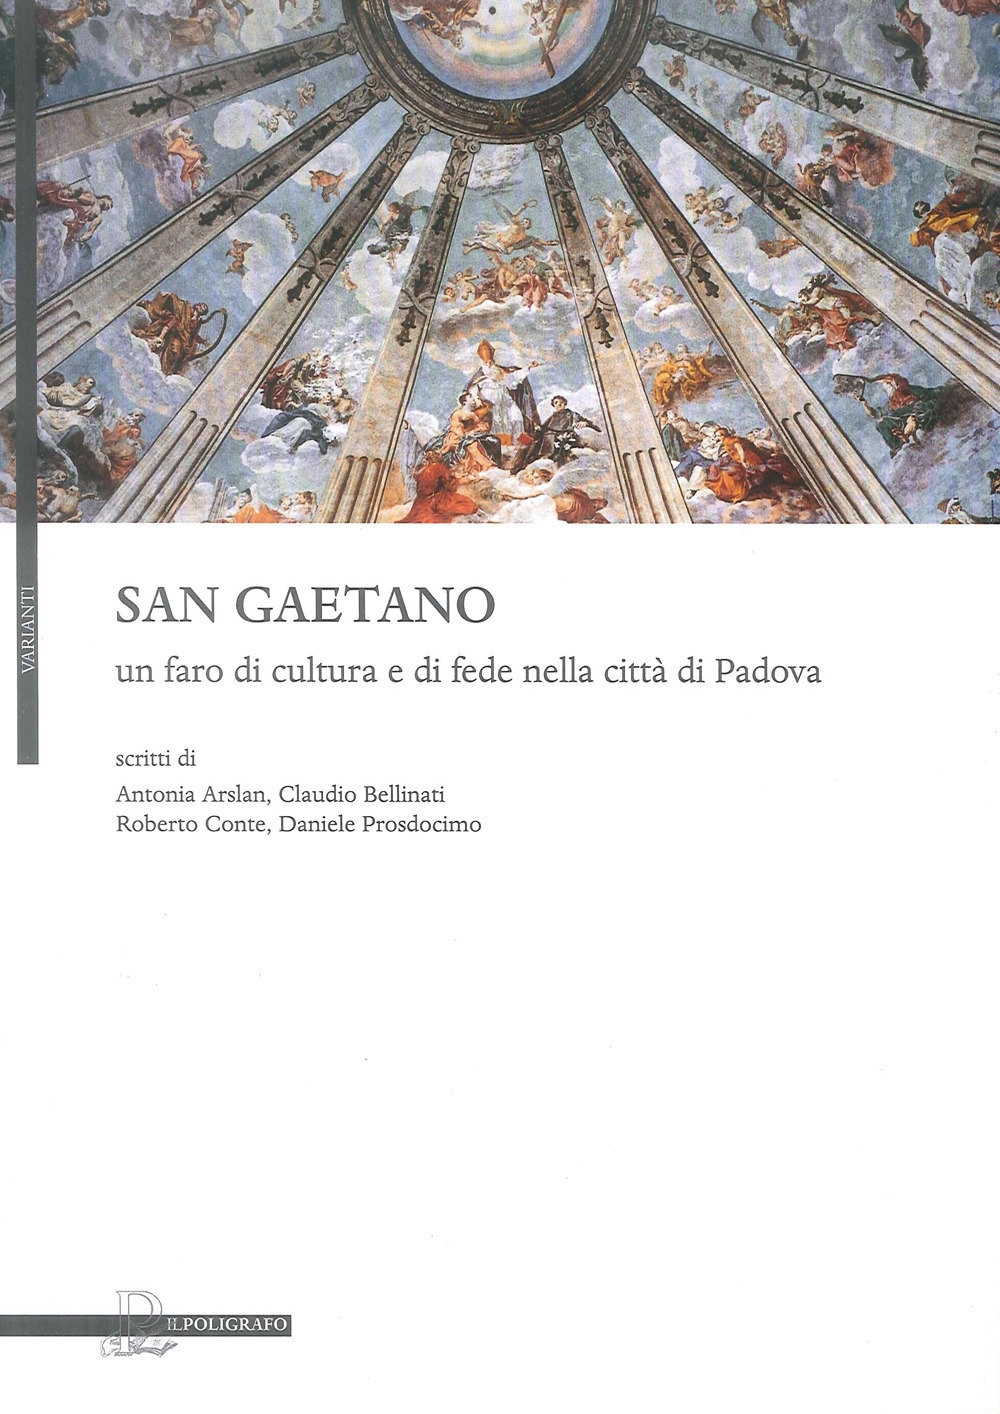 San Gaetano, un faro di cultura e di fede nella città di Padova